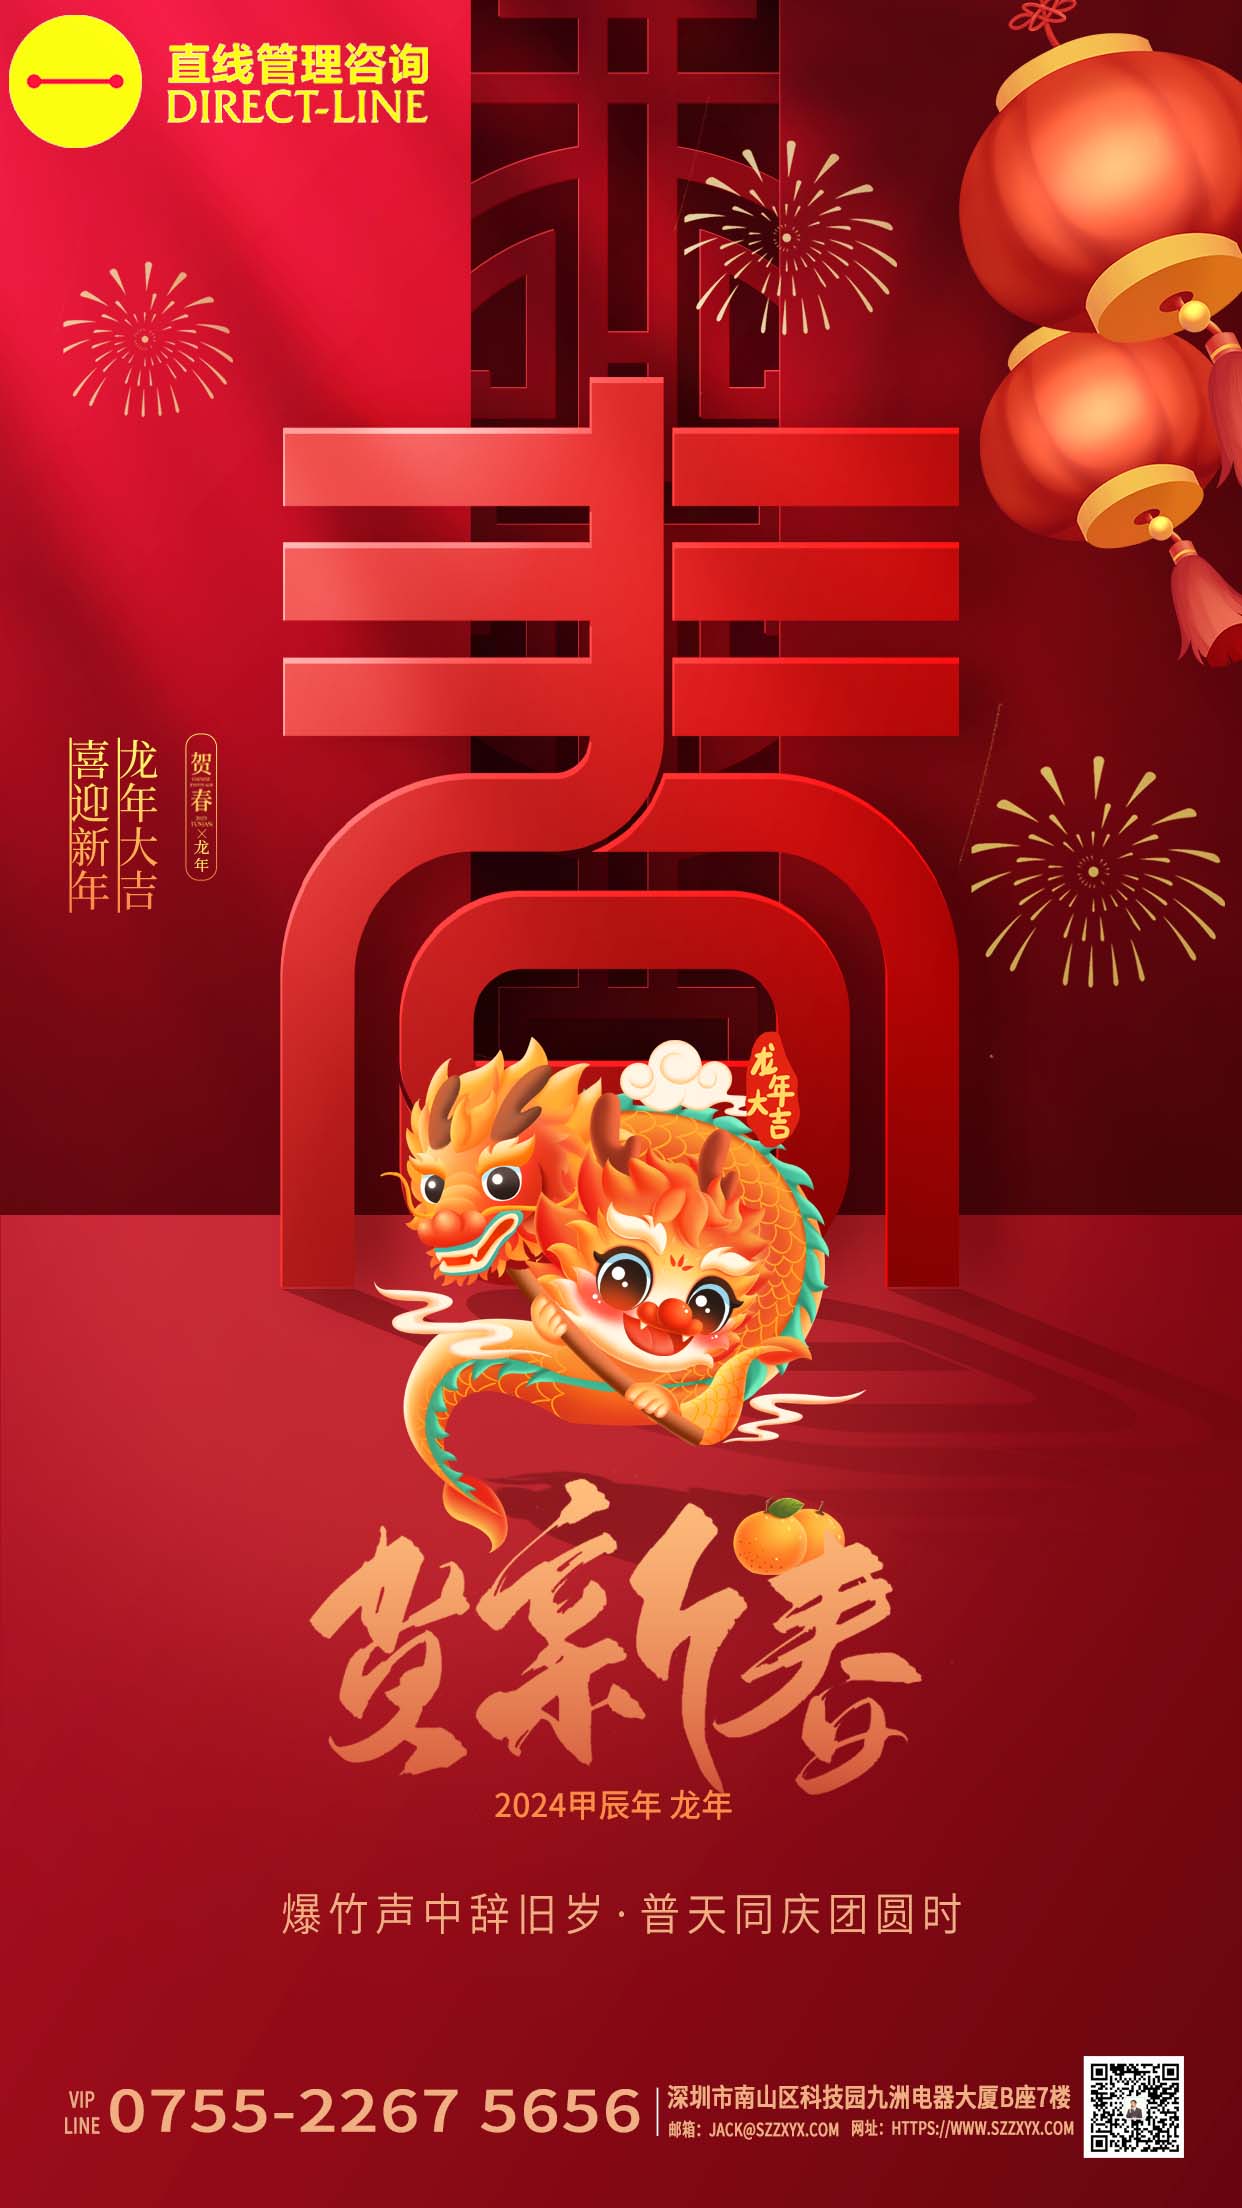 深圳www.wns9778.com咨询恭祝大家“喜迎新年,龙年大吉”!